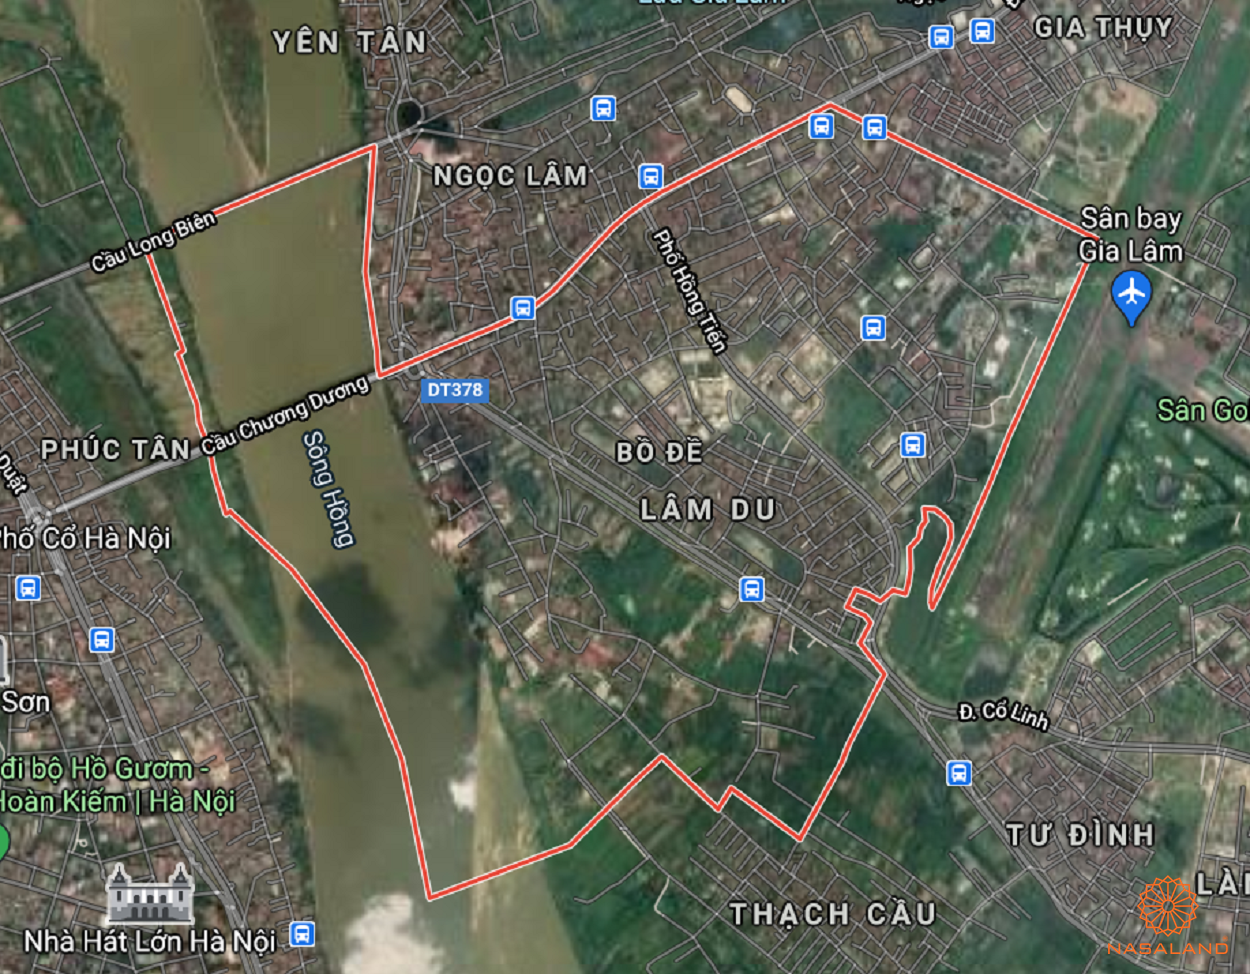 Bản đồ quy hoạch sử dụng đất theo bản đồ quy hoạch sử dụng đất Phường Bồ Đề năm 2020 Quận Long Biên, Thành phố Hà Nội.